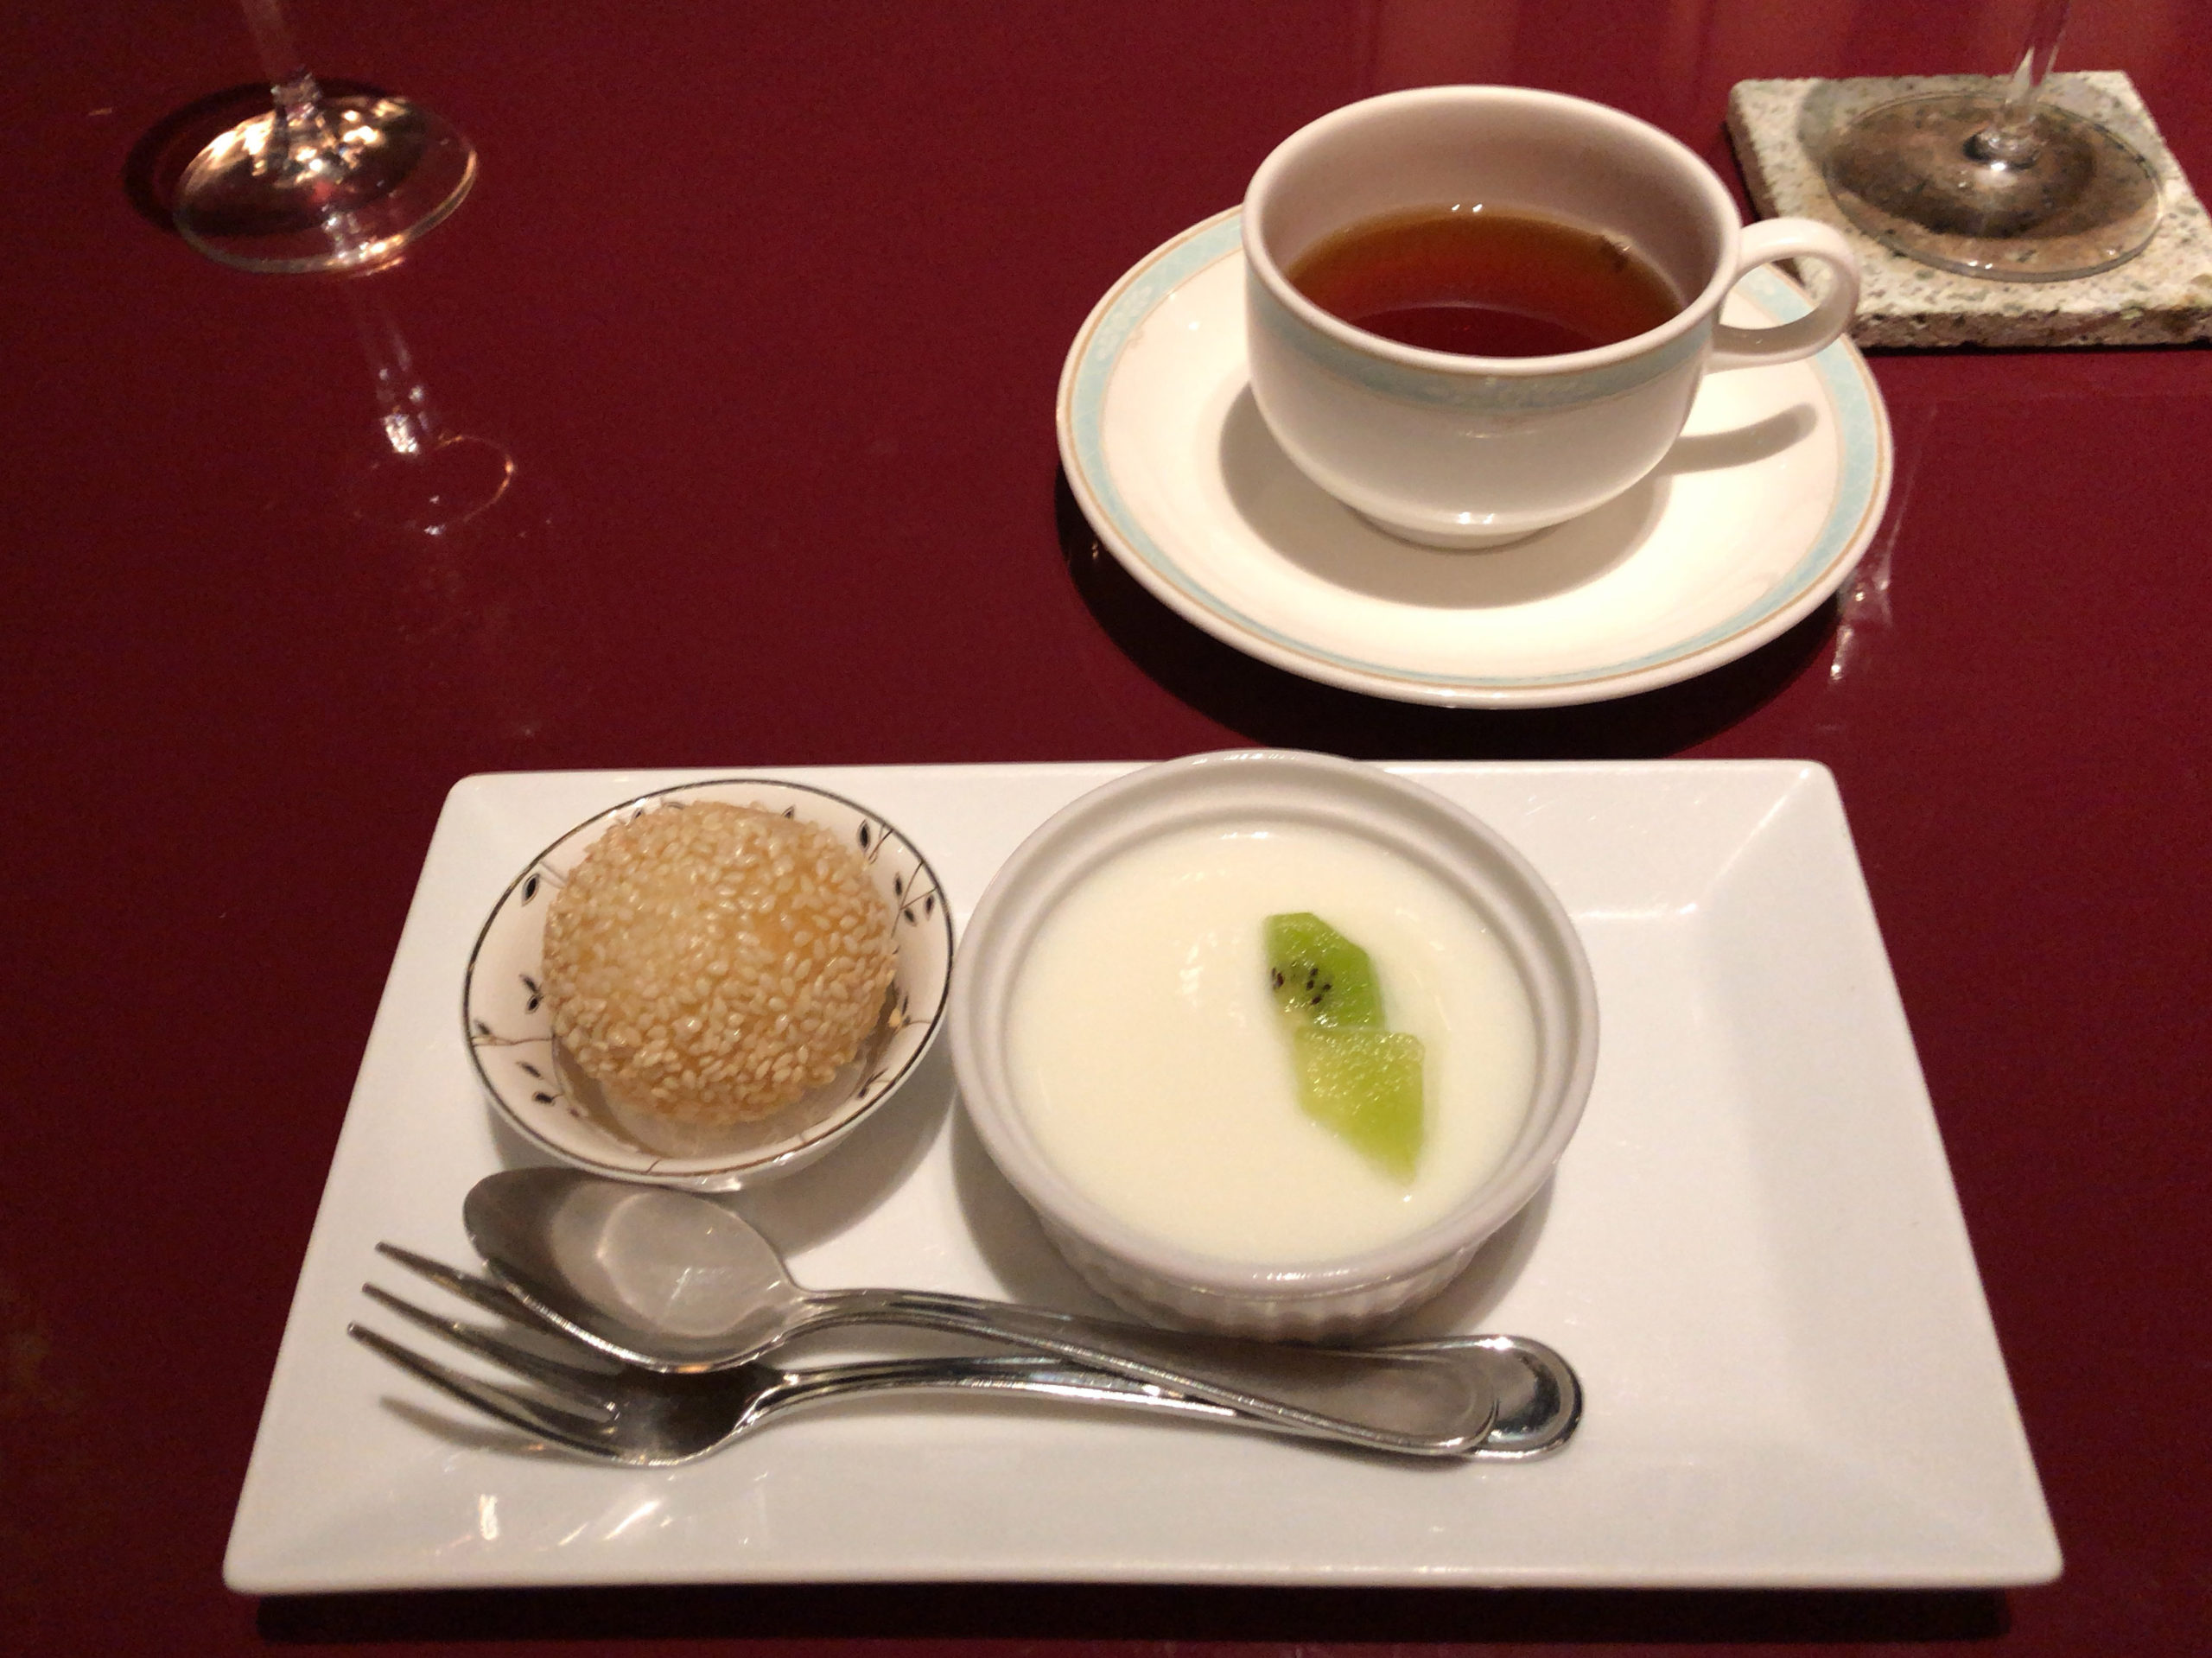 デザート。杏仁豆腐と胡麻団子。お茶は烏龍茶。